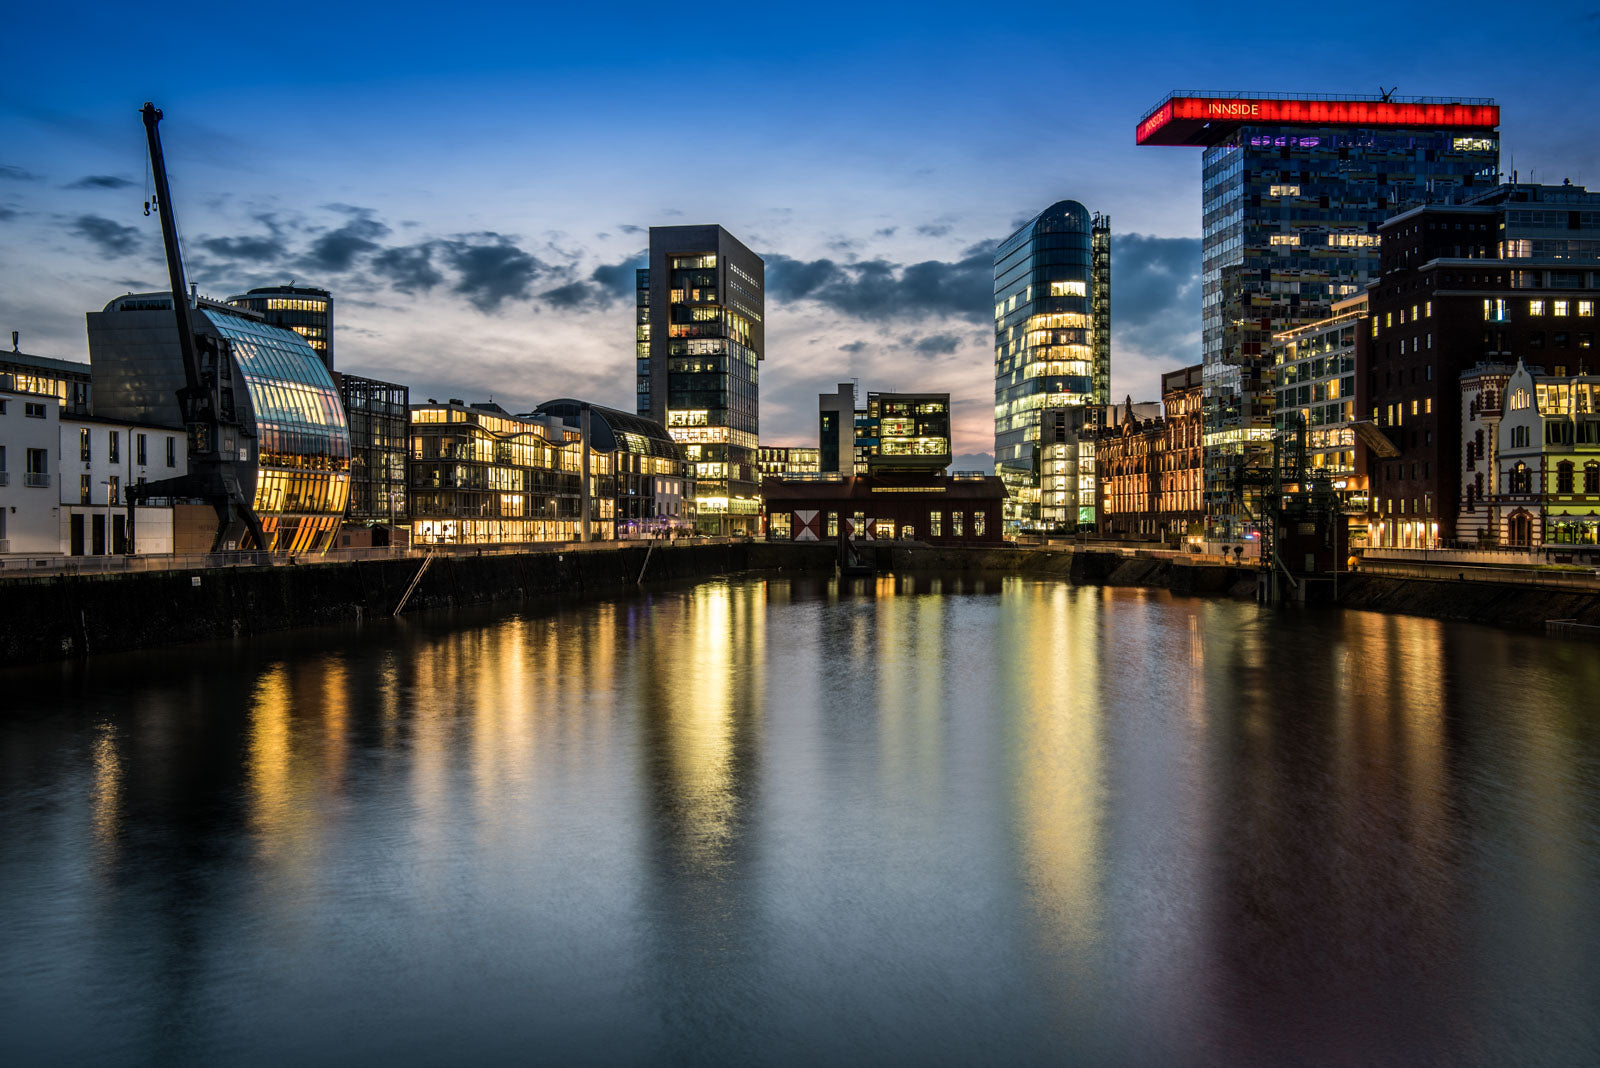 Available Light, blaue Stunde im Medienhafen Düsseldorf